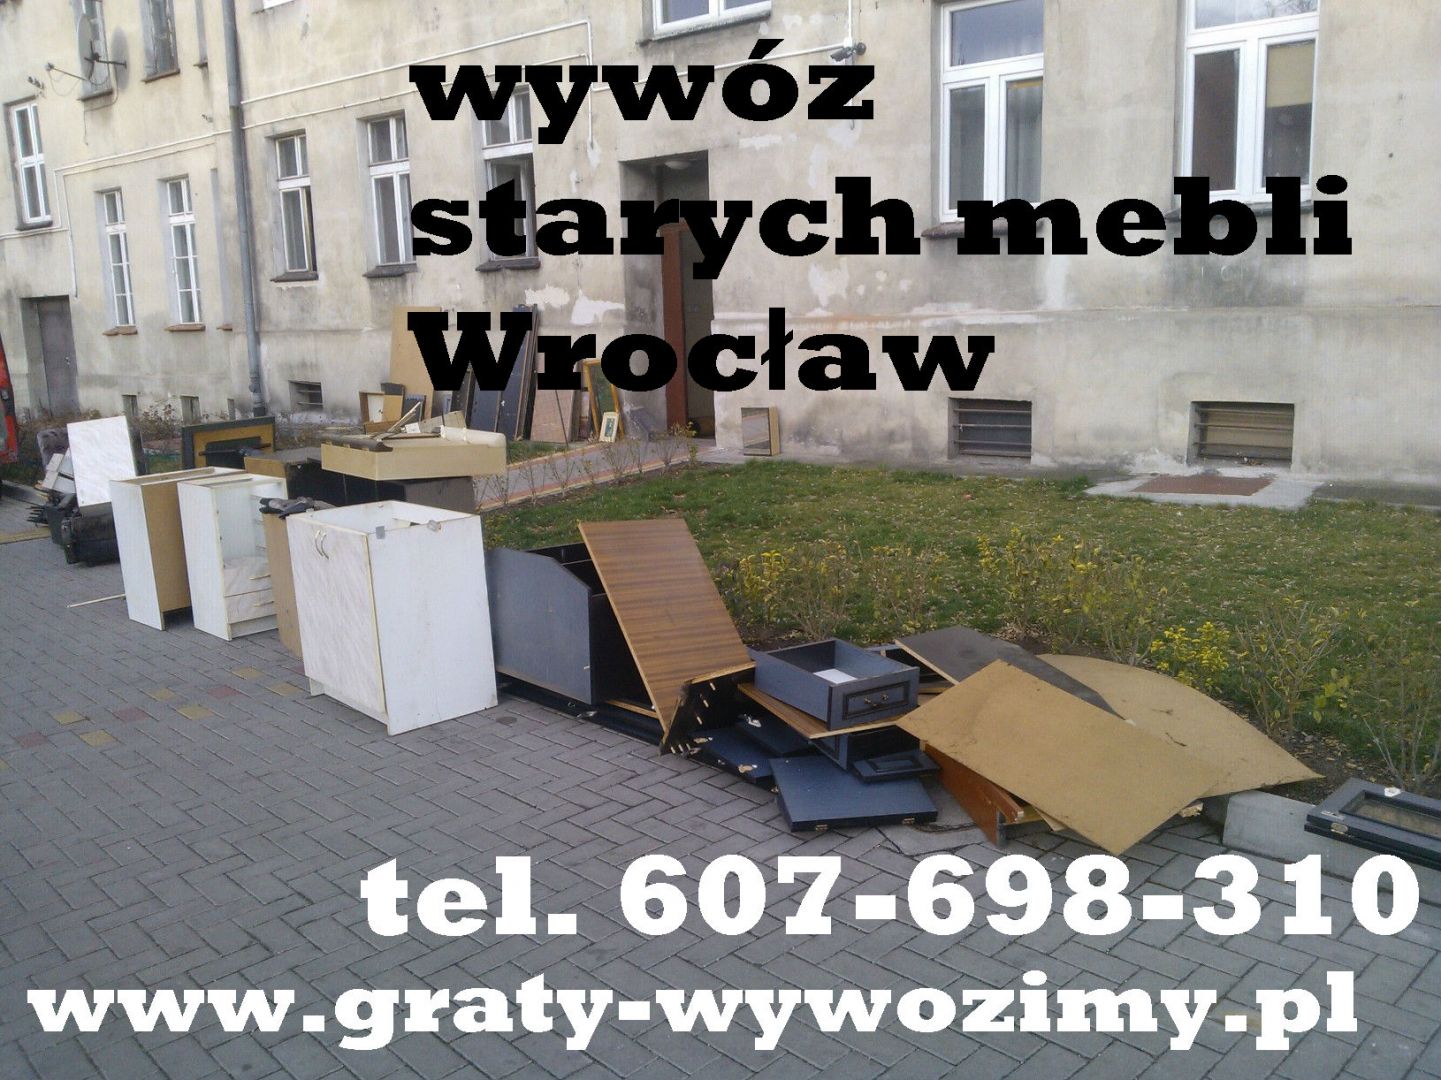 Wywóz starych mebli z mieszkań,domów Wrocław,opróżnianie mieszkań,piwnic Wrocław - Zdjęcie 1